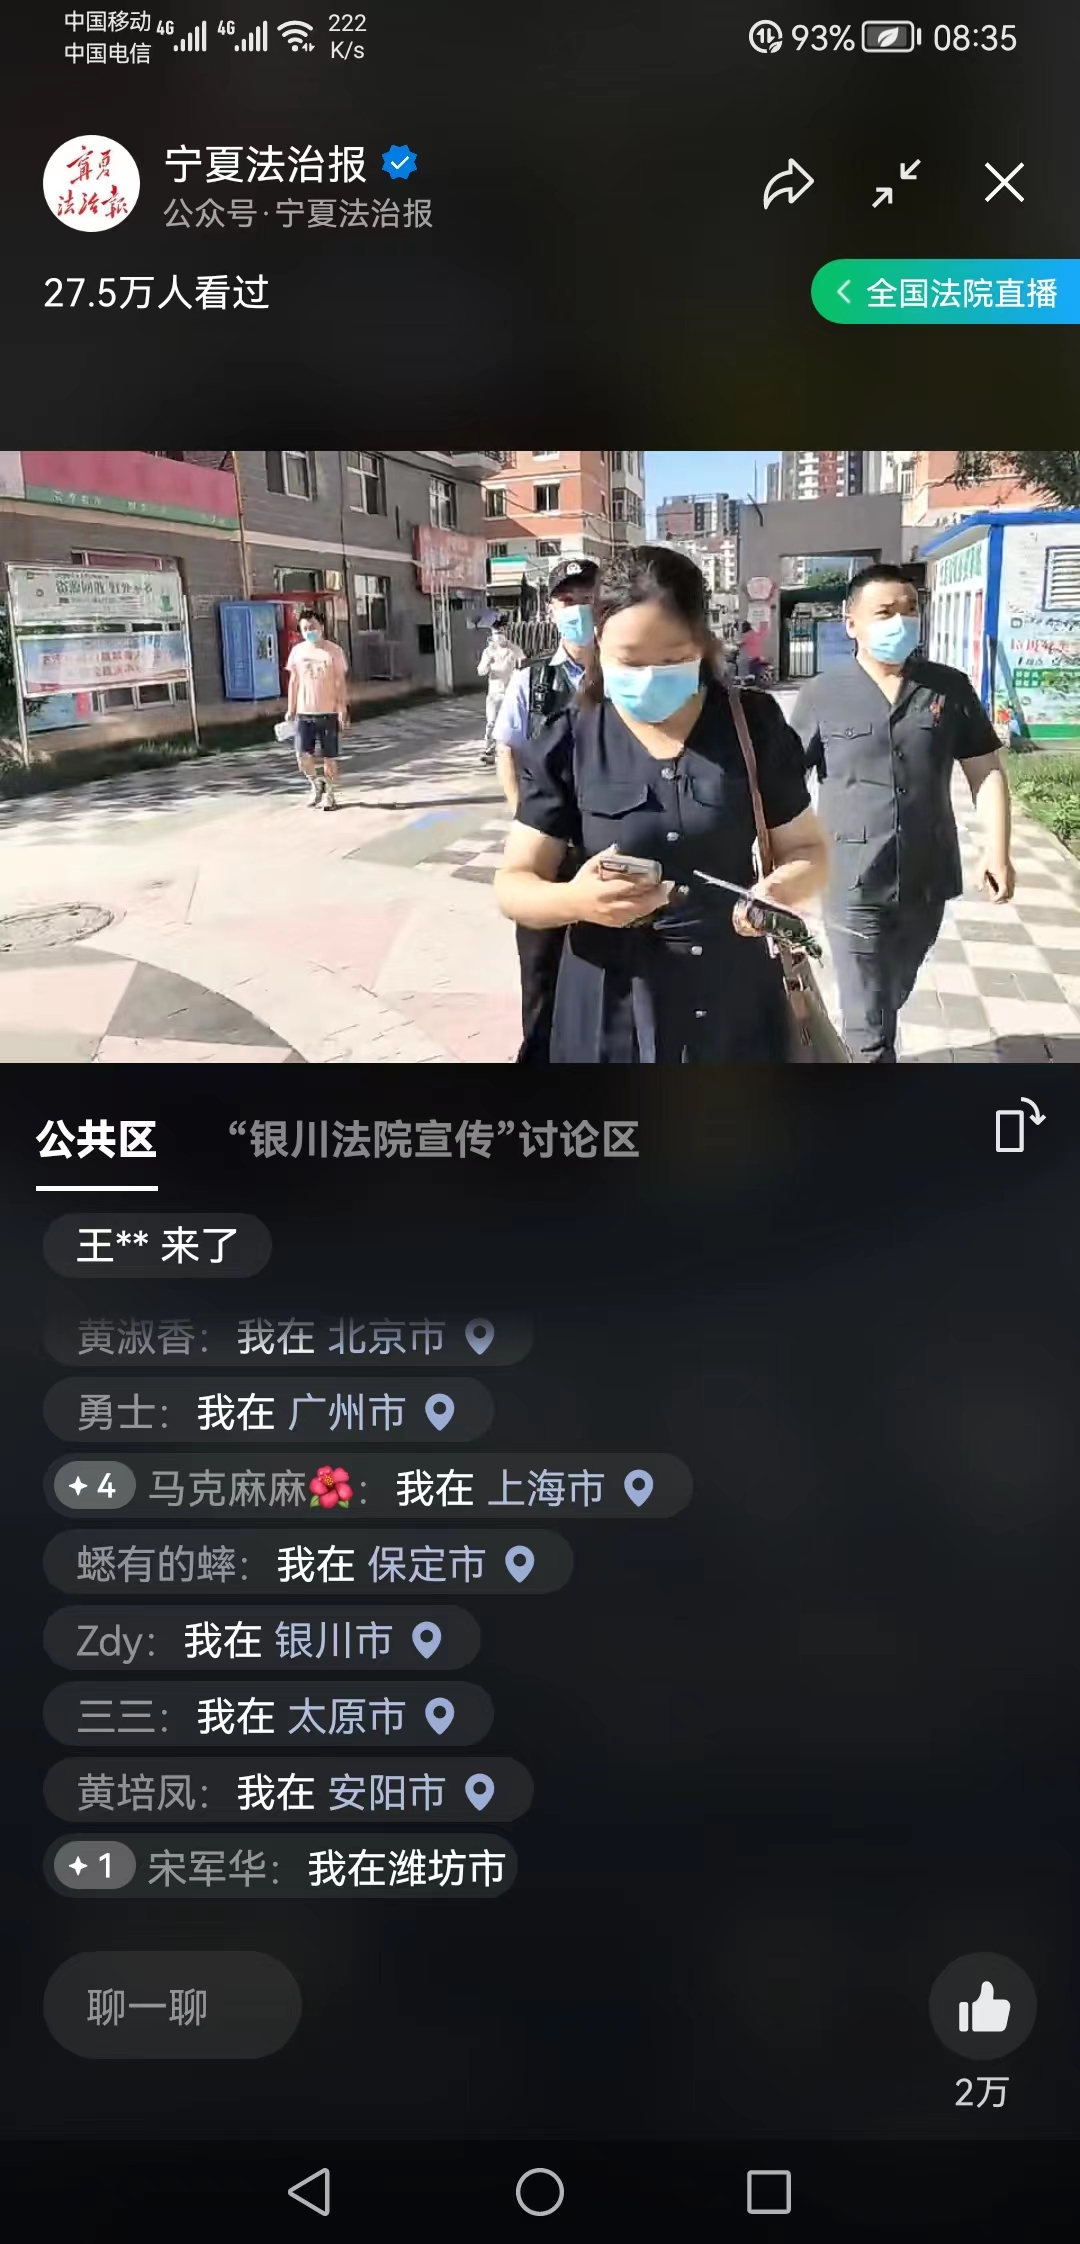 兴庆区法院执行直播吸引了全国各地网友积极参与互动。